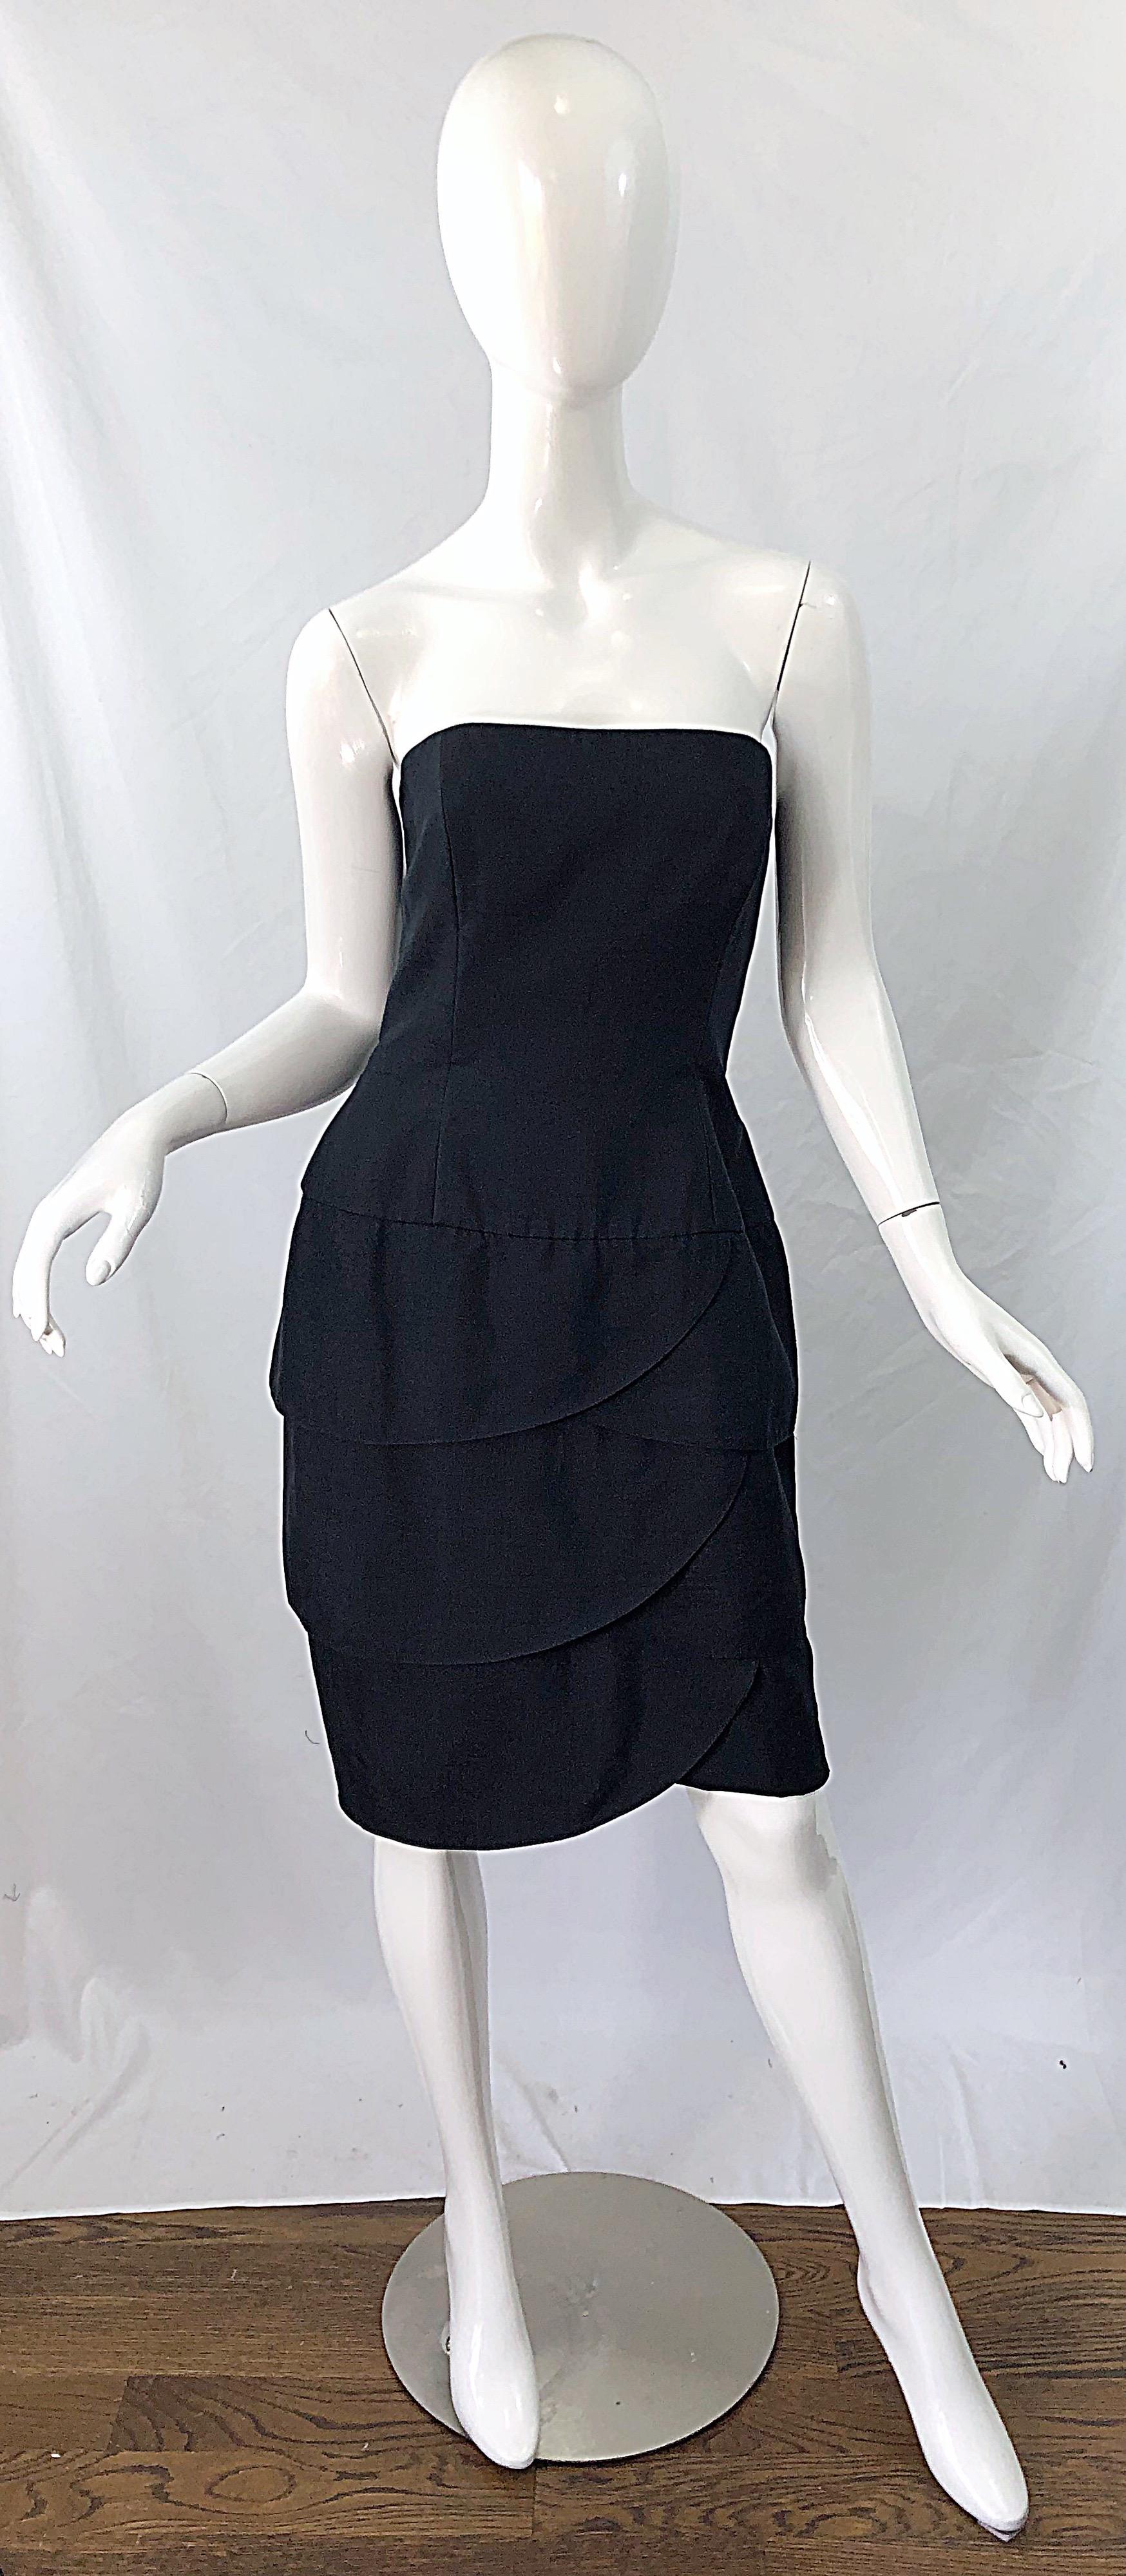 Das perfekte kleine schwarze Kleid! Dieses schicke Seidenkleid wurde von AJ BARI für LORD AND TAYLOR entworfen! Trägerloses Mieder mit Stäbchen. Tulpenrock für Autowaschanlagen. Verdeckter Reißverschluss auf der Rückseite mit Haken- und